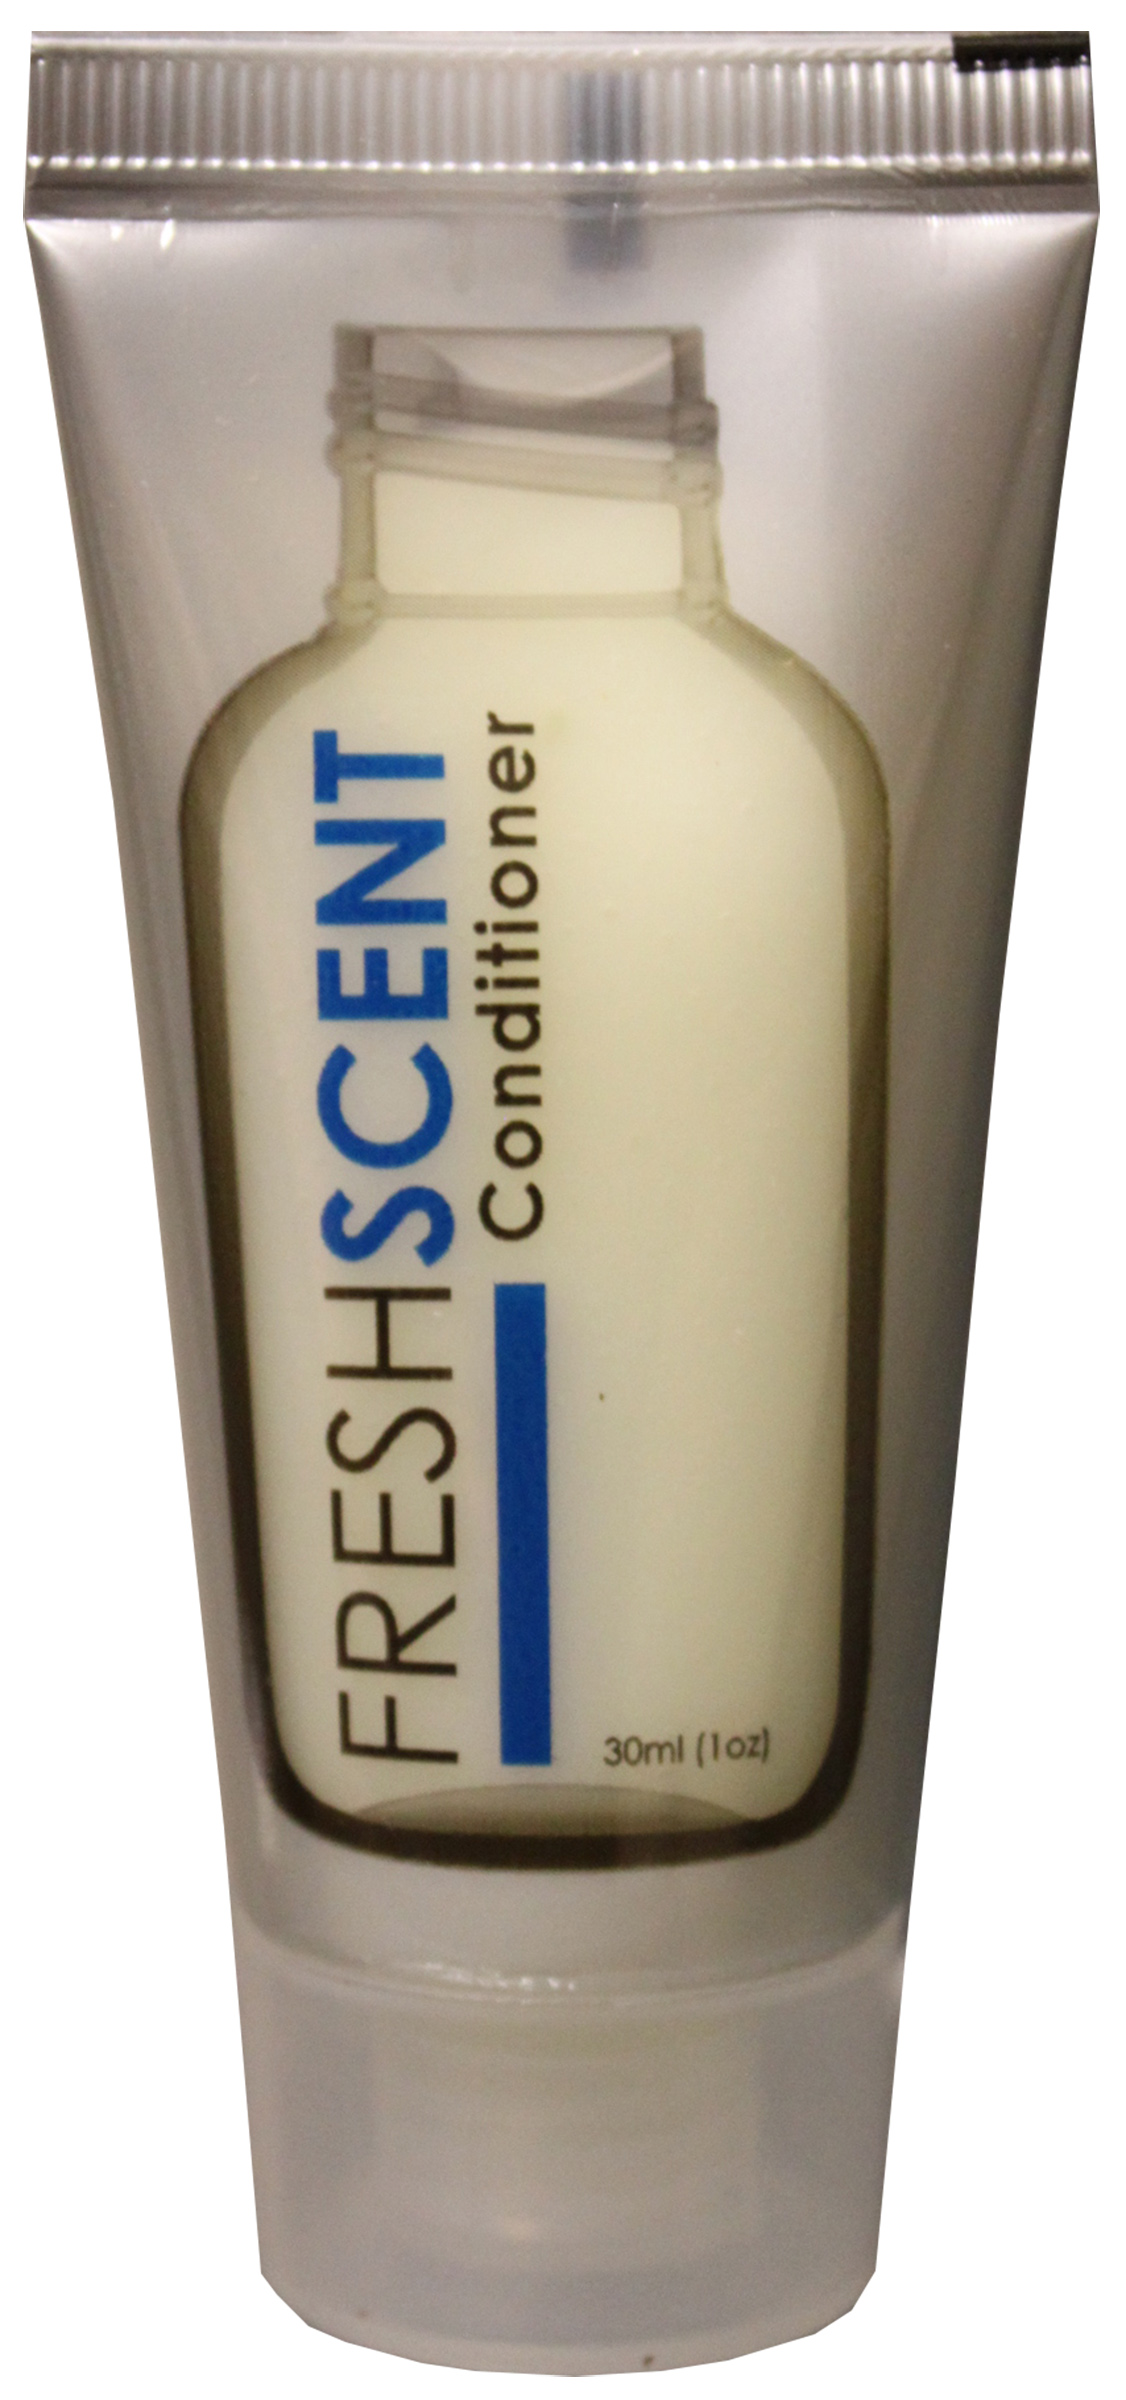 Freshscent 1 oz. Conditioner Tube